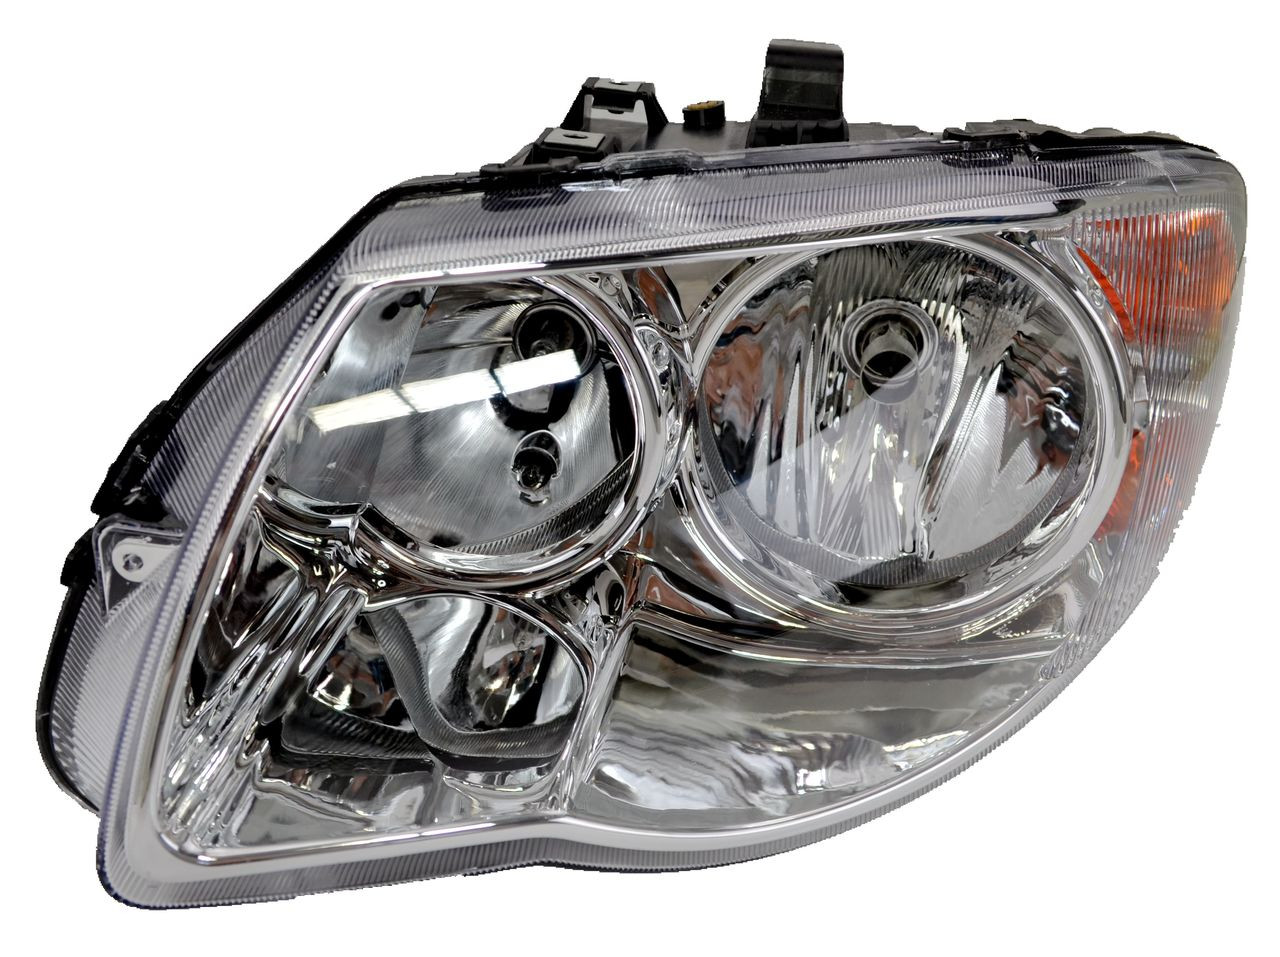 Headlight for Chrysler Grand Voyager 2005-2007 New Left LHS Front Lamp 05 06 07